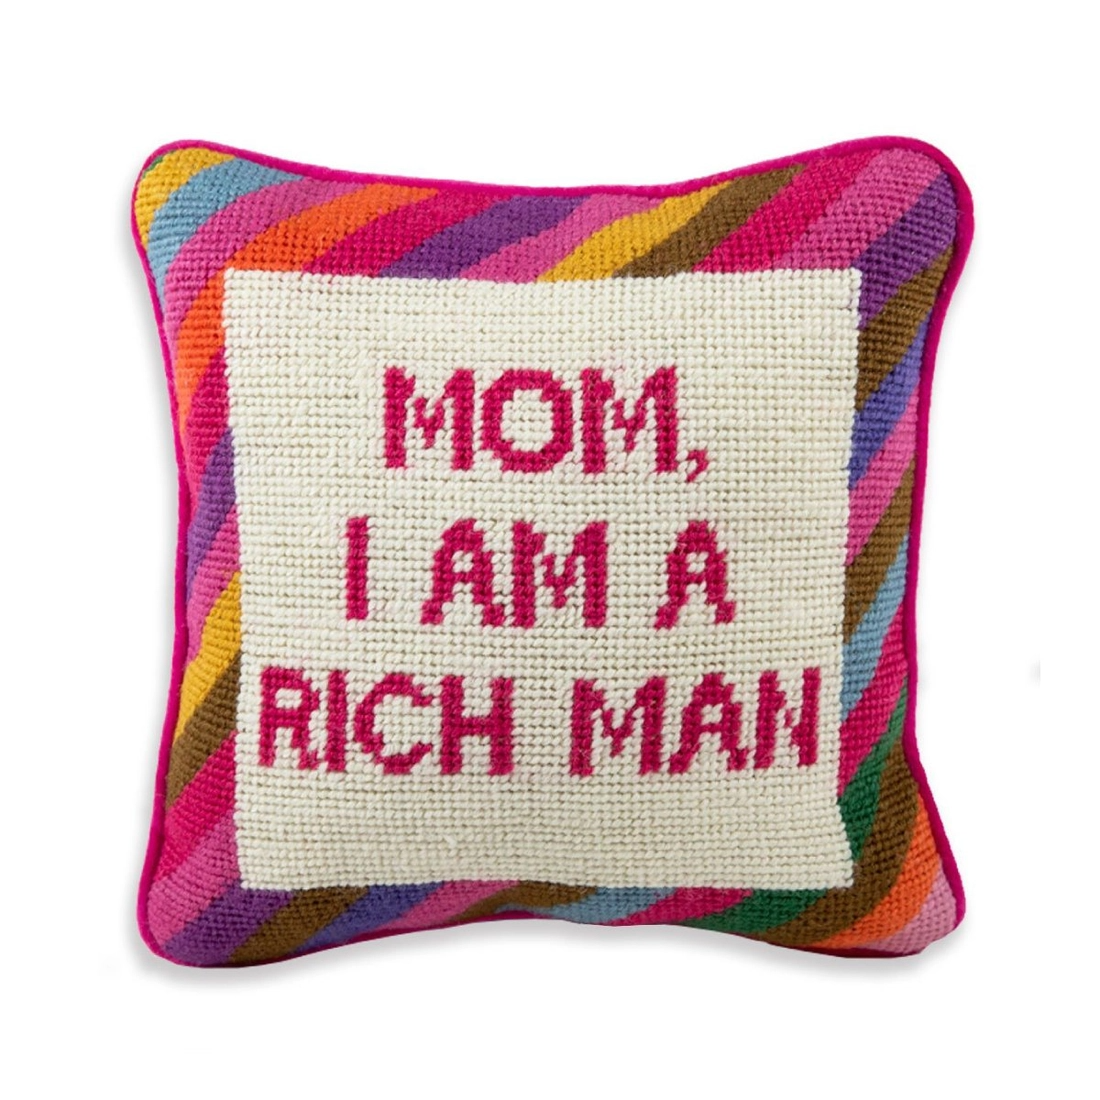 Mom I’m a rich man pillow